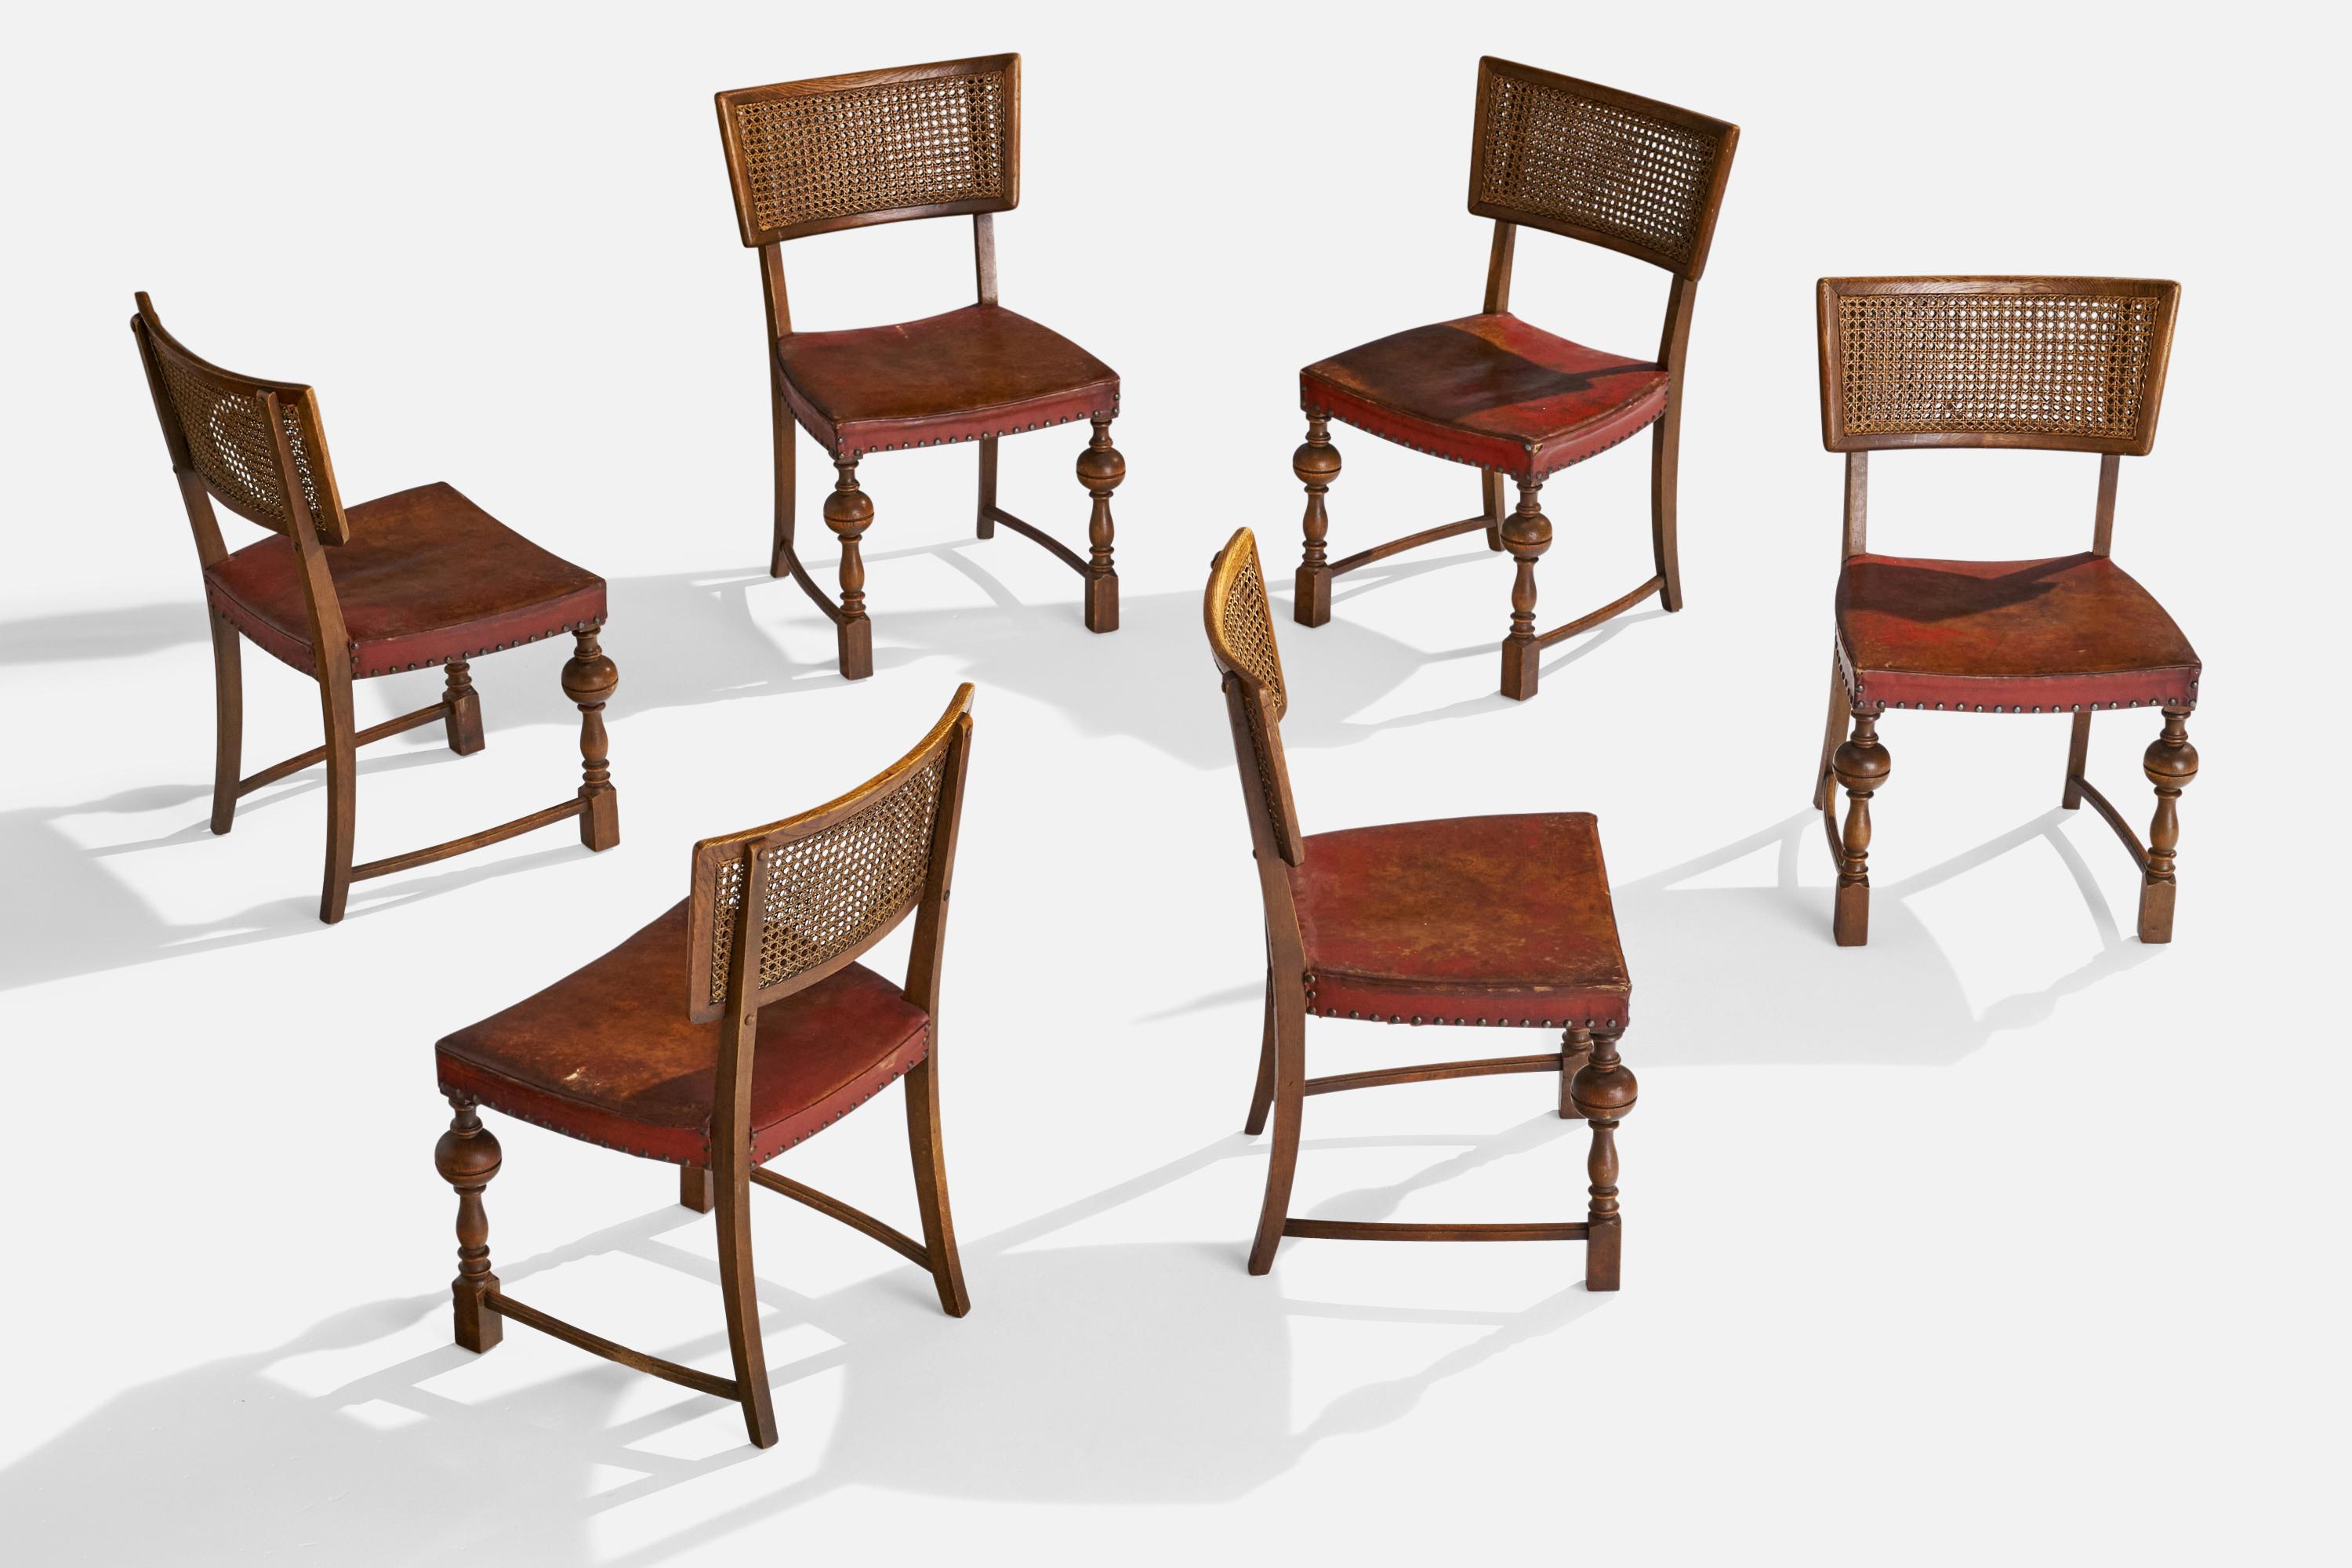 6 Beistell- oder Esszimmerstühle aus Eiche, Rohr und rotem Leder, entworfen und hergestellt in Dänemark, 1930er Jahre.

Sitzhöhe: 16.75